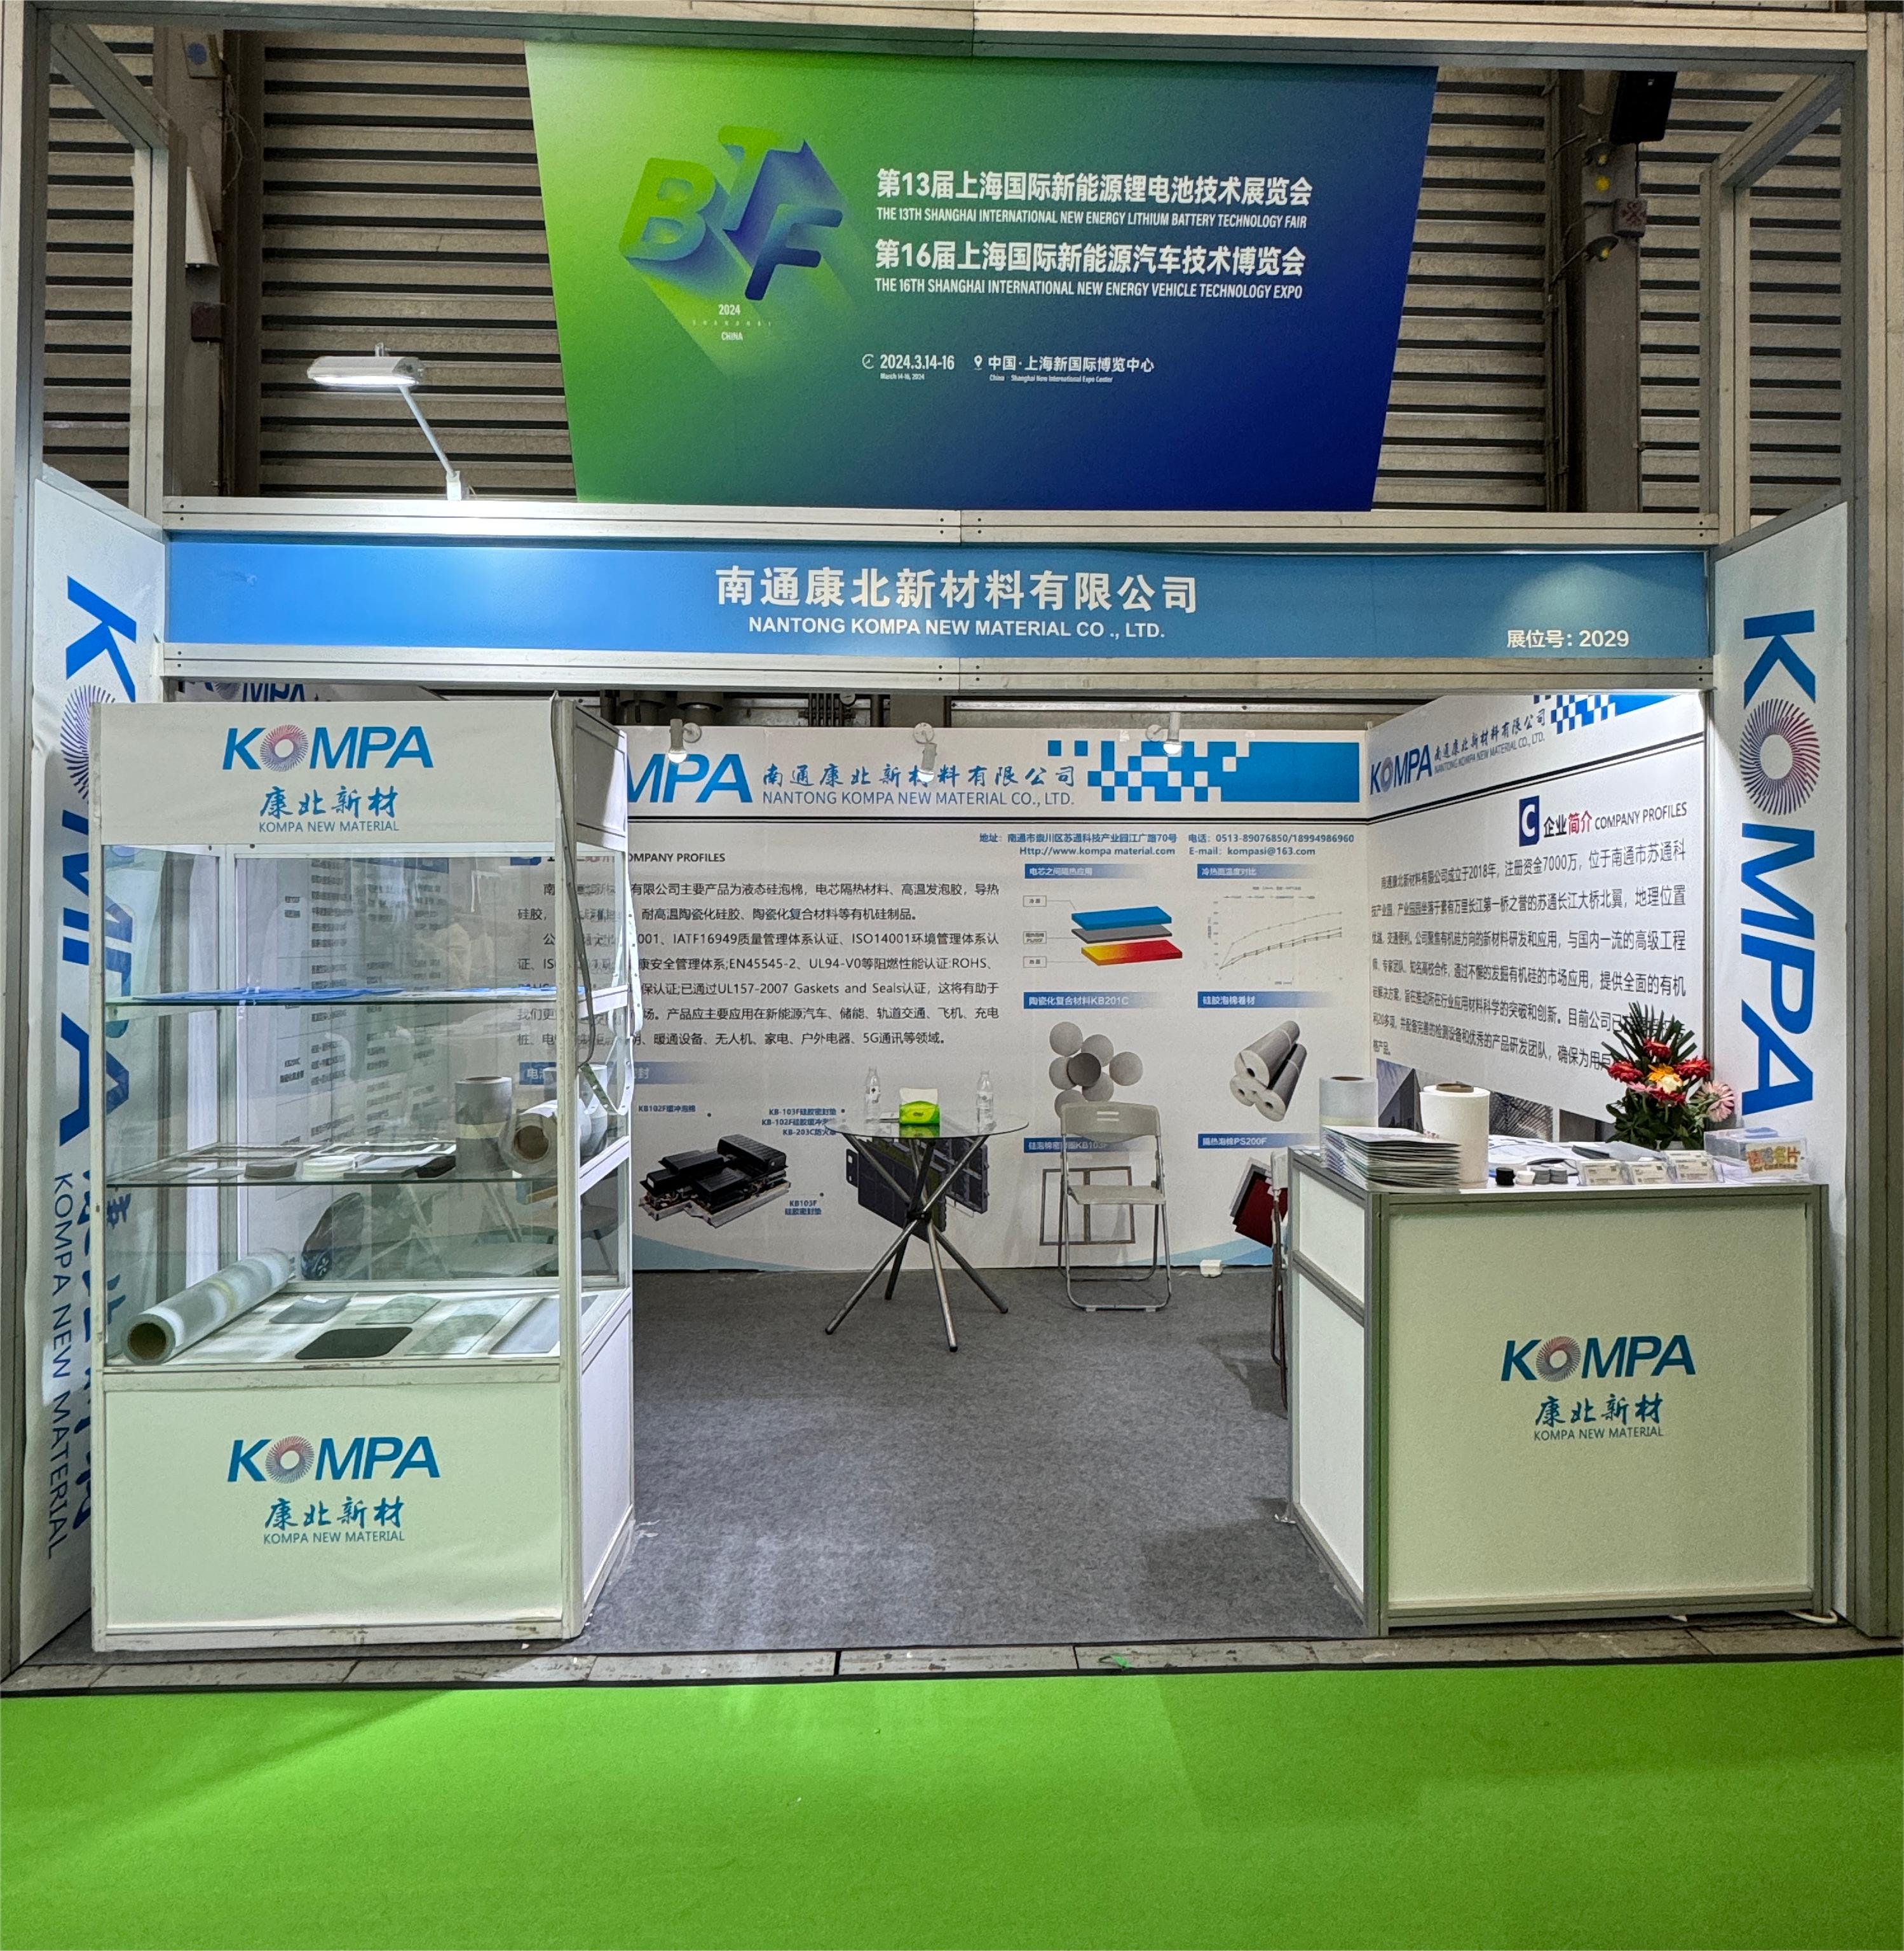 上海新能源锂电池技术展览会、汽车技术博览会(图1)